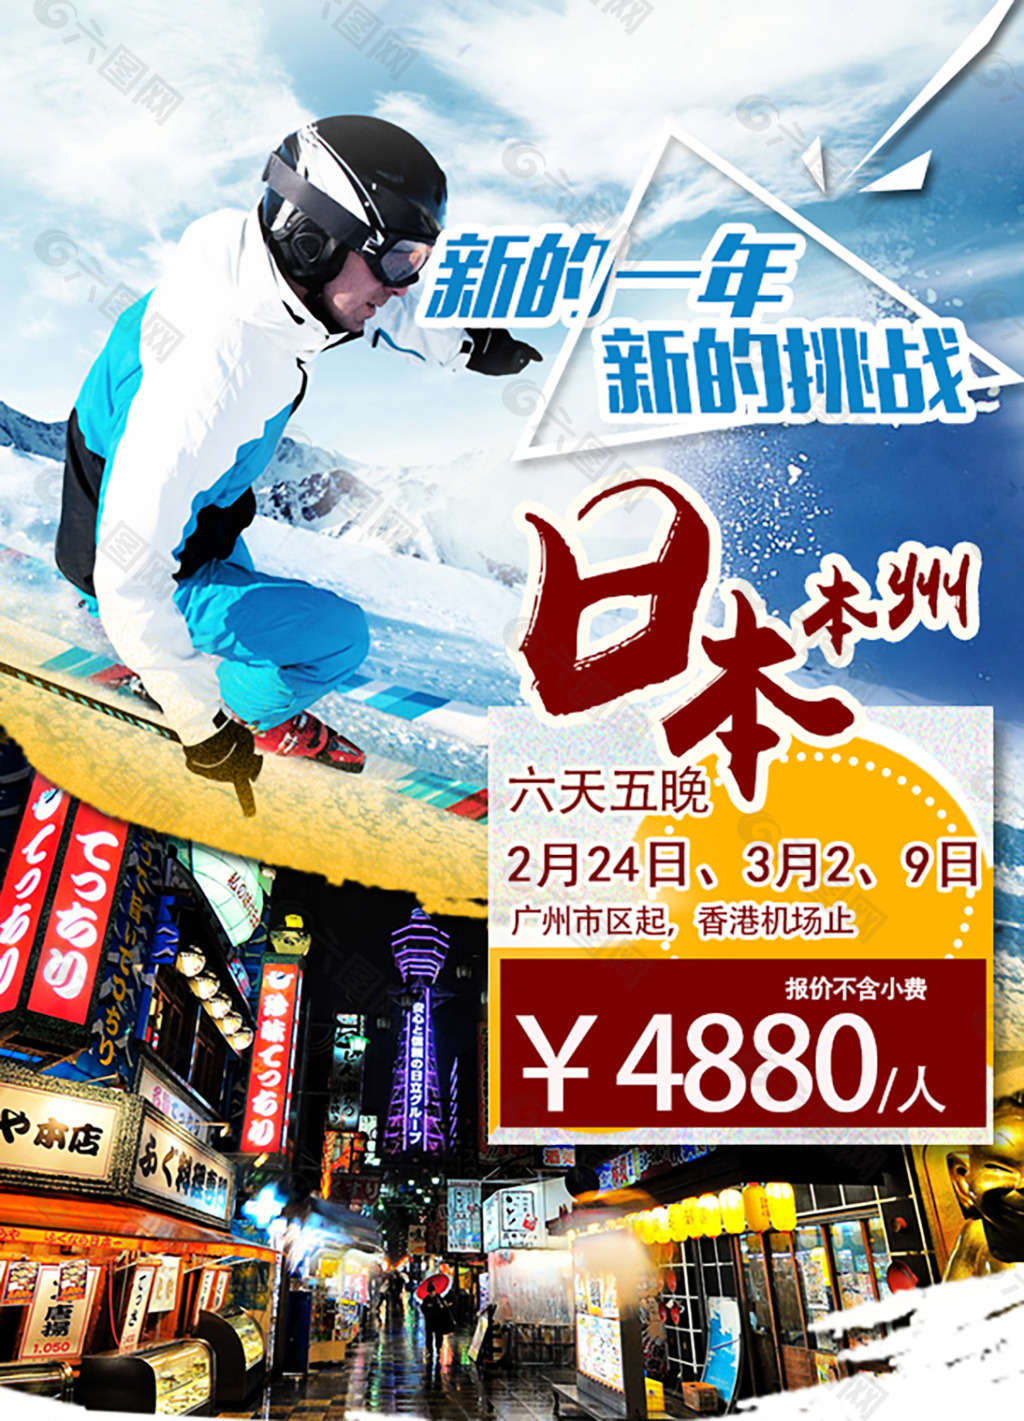 日本旅游滑雪主题促销海报psd